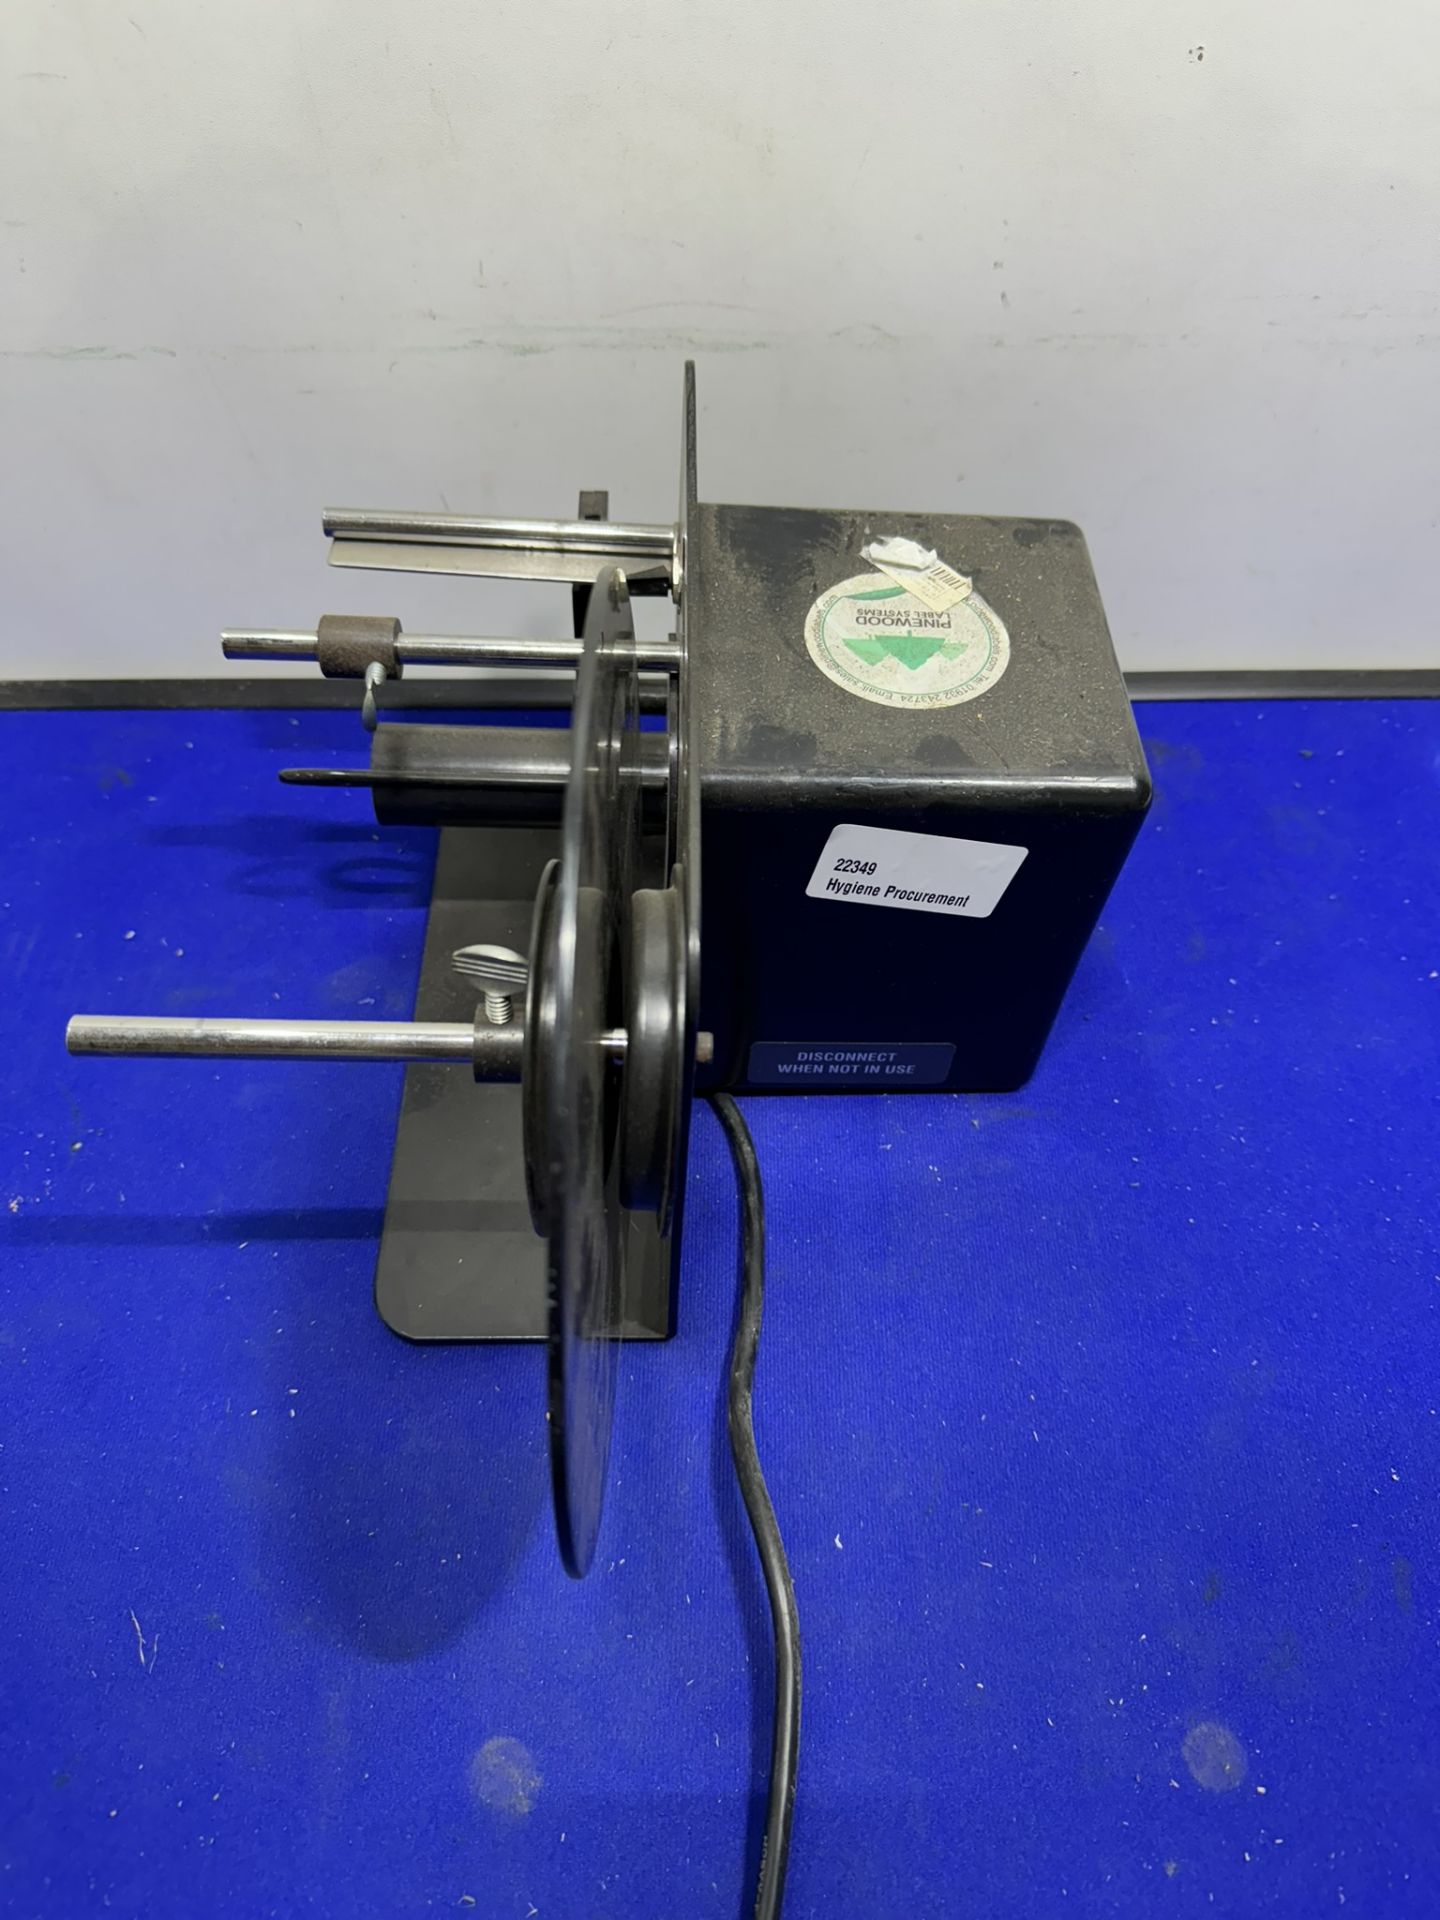 Dispensa-Matic U45 Electric Semi-Automatic Label Dispenser